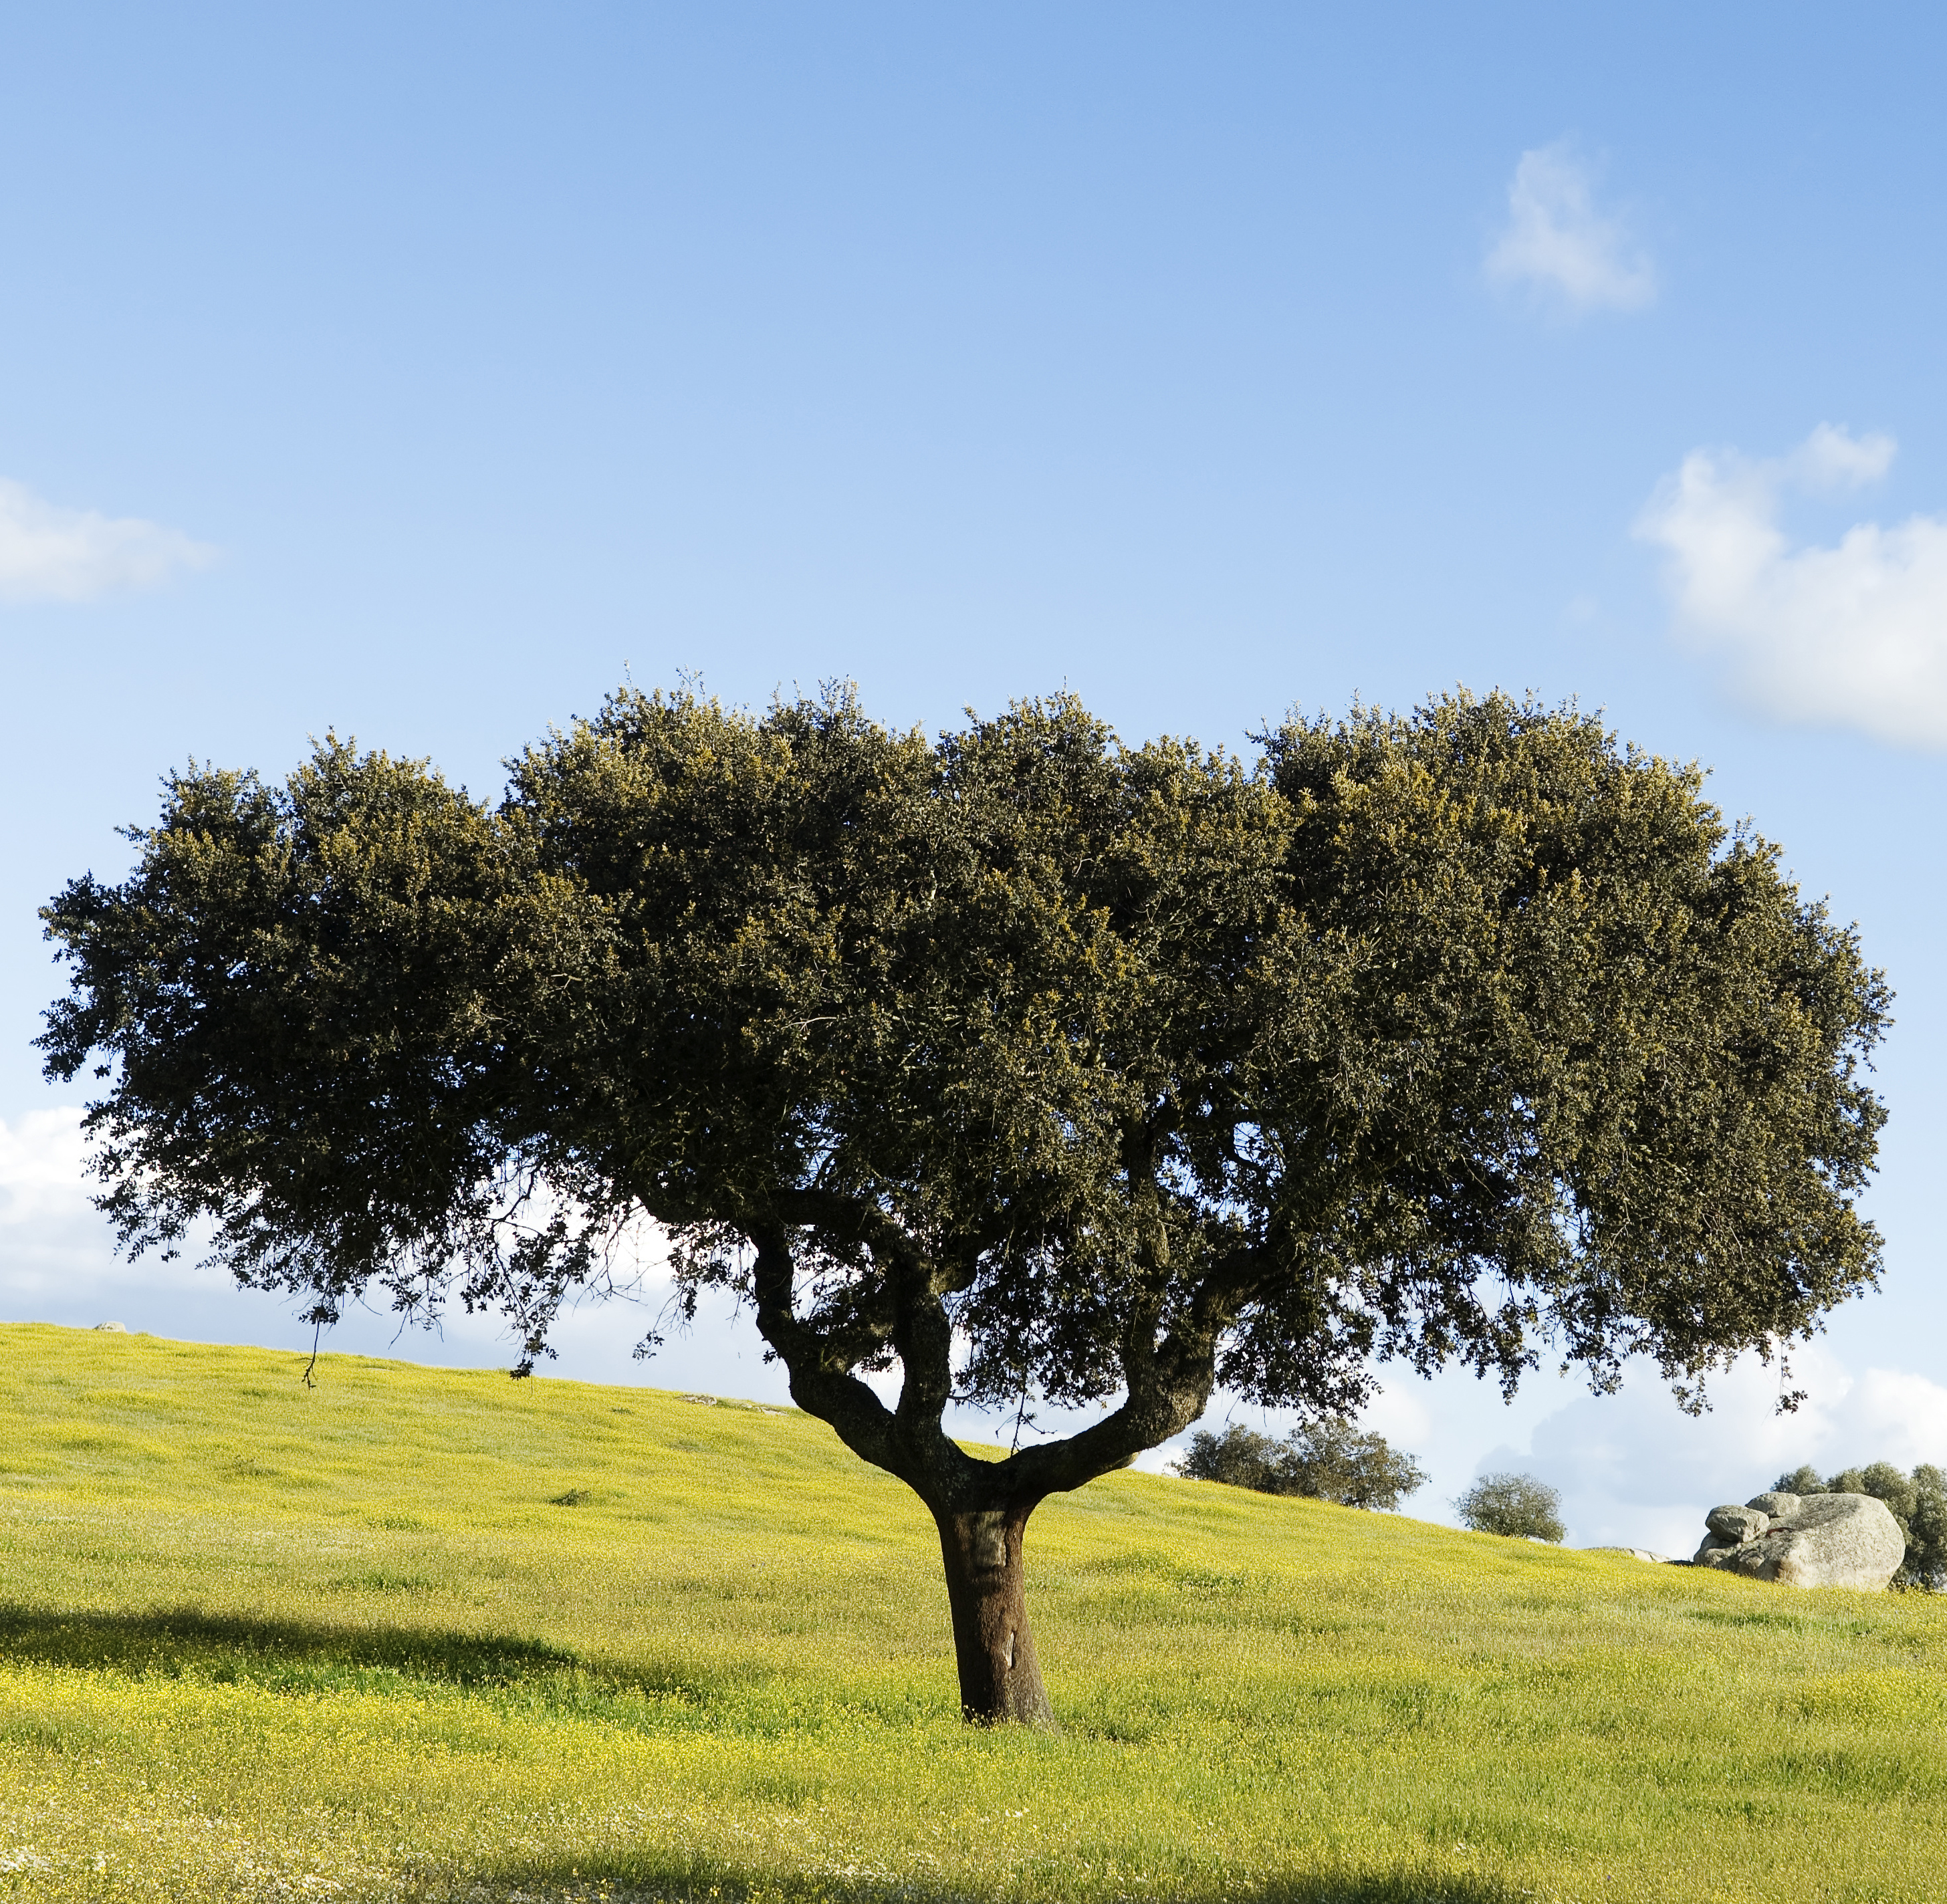 Seedeo® Steineiche (Quercus ilex) Pflanze ca. 30 - 40 cm hoch